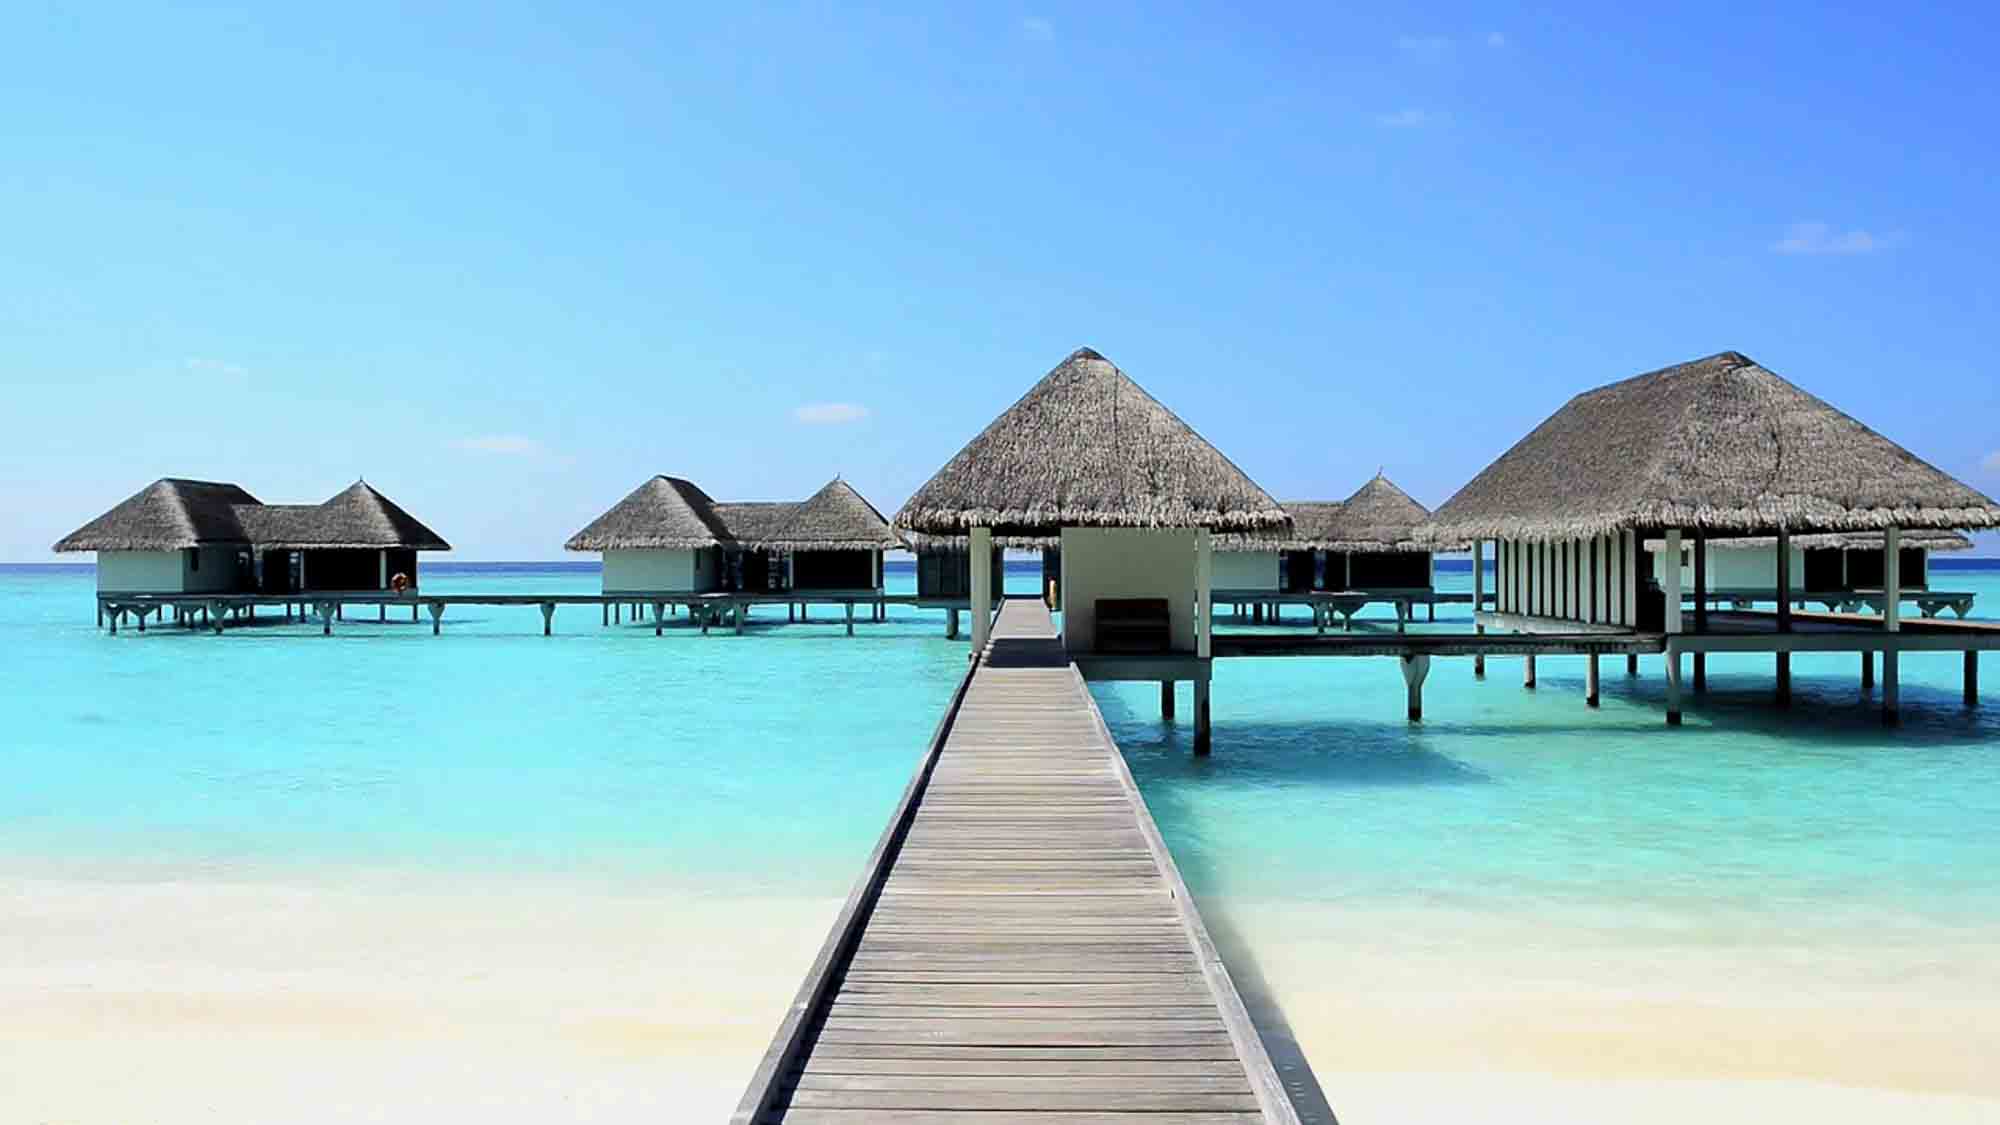 The Maldives (/ËˆmÉ’ldiËvz/ or /ËˆmÉ”ËldaÉªvz/ (About this sound listen); Dhivehi: Þ‹Þ¨ÞˆÞ¬Þ€Þ¨ÞƒÞ§Þ‡Þ°Þ–Þ¬ Dhivehi Raa'jey), officially the Republic of Maldives, is a South Asian sovereign state, located in the Indian Ocean, situated in the Arabian Sea. It lies southwest of Sri Lanka and India. The chain of 26 atolls stretches from Ihavandhippolhu Atoll in the north to the Addu City in the south. Comprising a territory spanning roughly 298 square kilometres (115 sq mi), the Maldives is one of the world's most geographically dispersed countries, as well as the smallest Asian country by land area and population, with around 427,756 inhabitants. Malé is the capital and most populated city, traditionally called the 